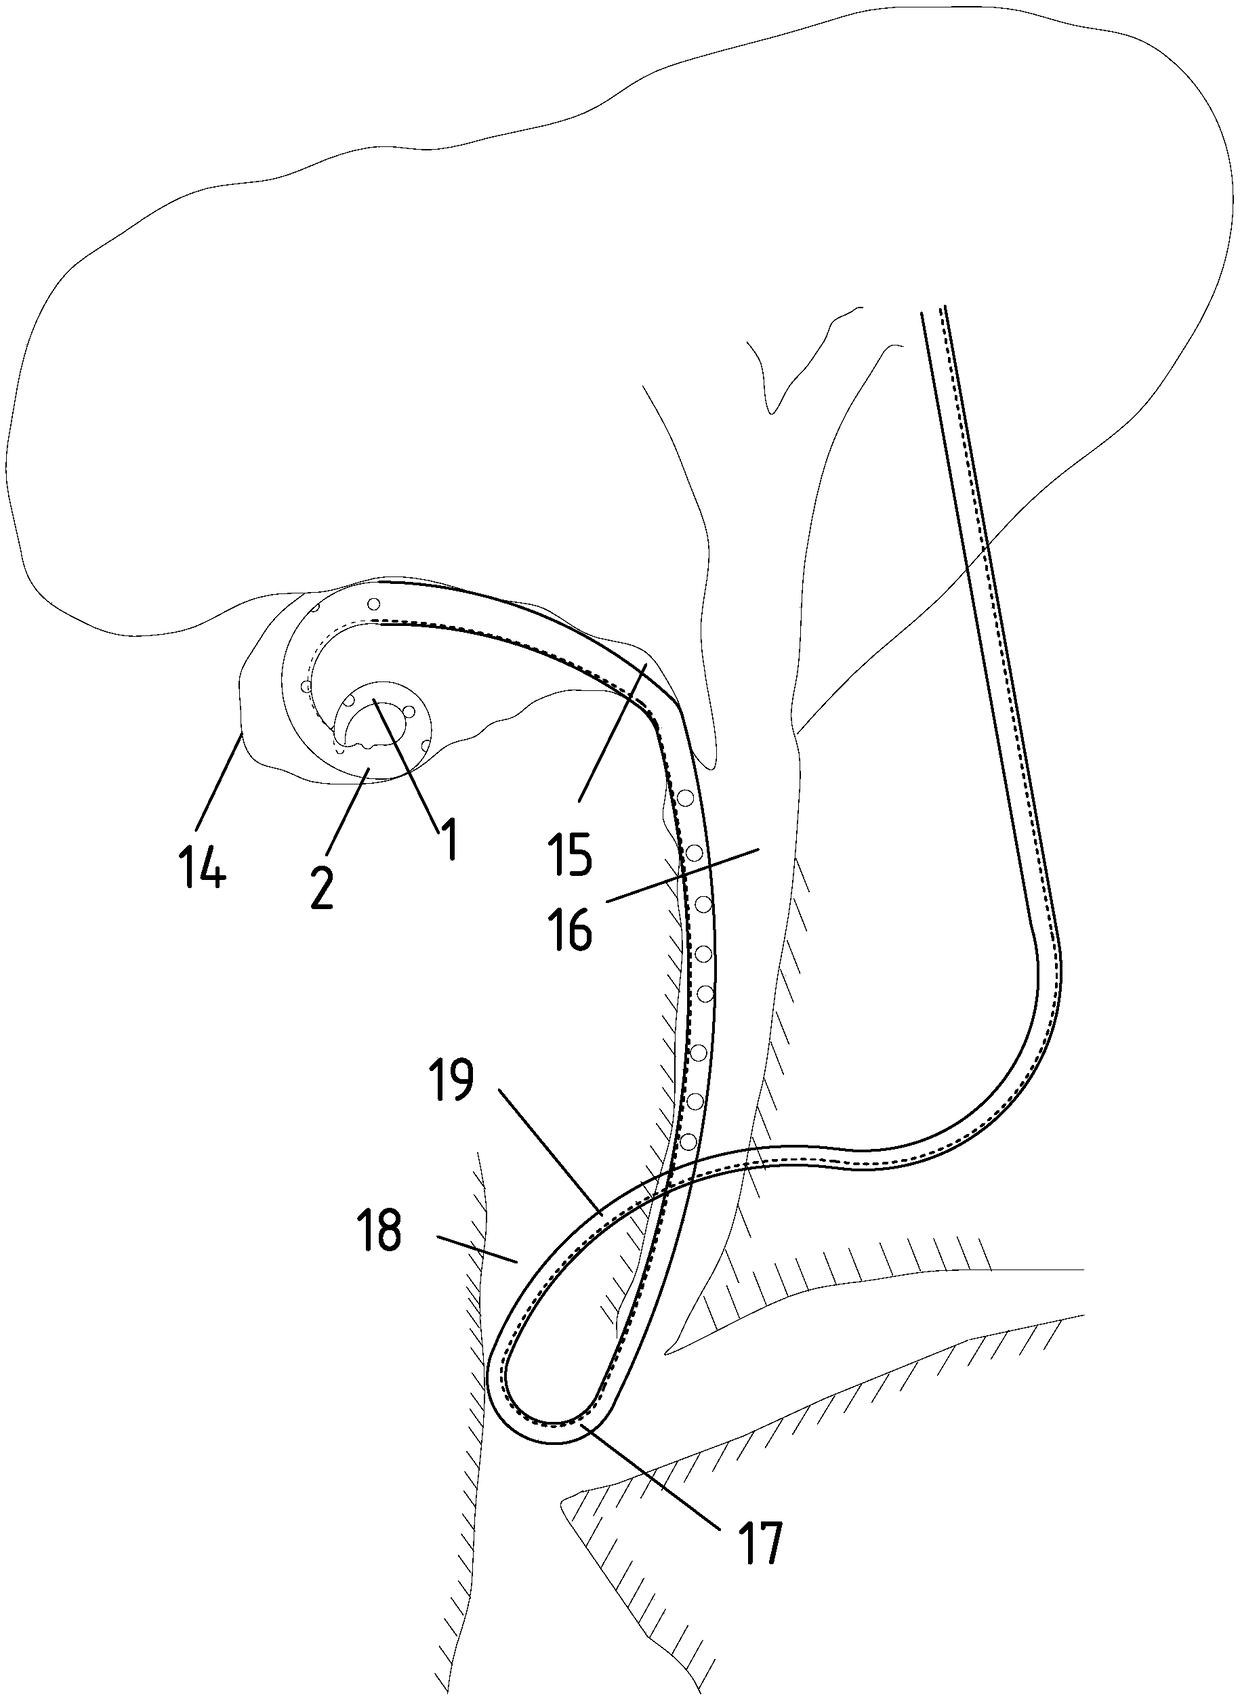 External drainage tube for nasal-gallbladder bile